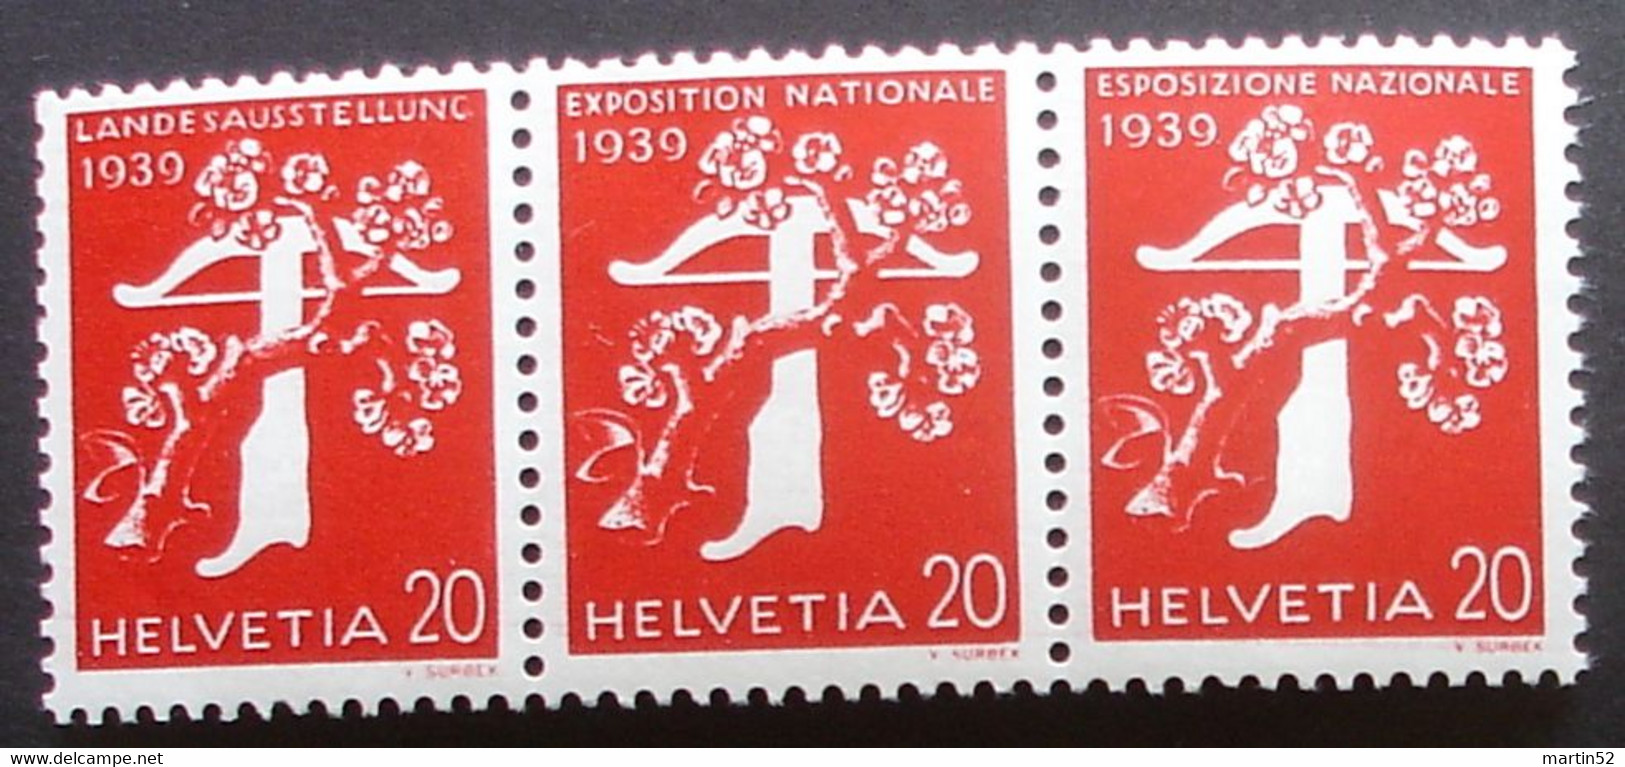 Schweiz Suisse 1939: Rollen-ZDR Se-tenant / Rouleaux / From Coil  Zu Z27a Mi W20 Mit N°. L 3075 ** MNH (Zu CHF 48.00) - Coil Stamps